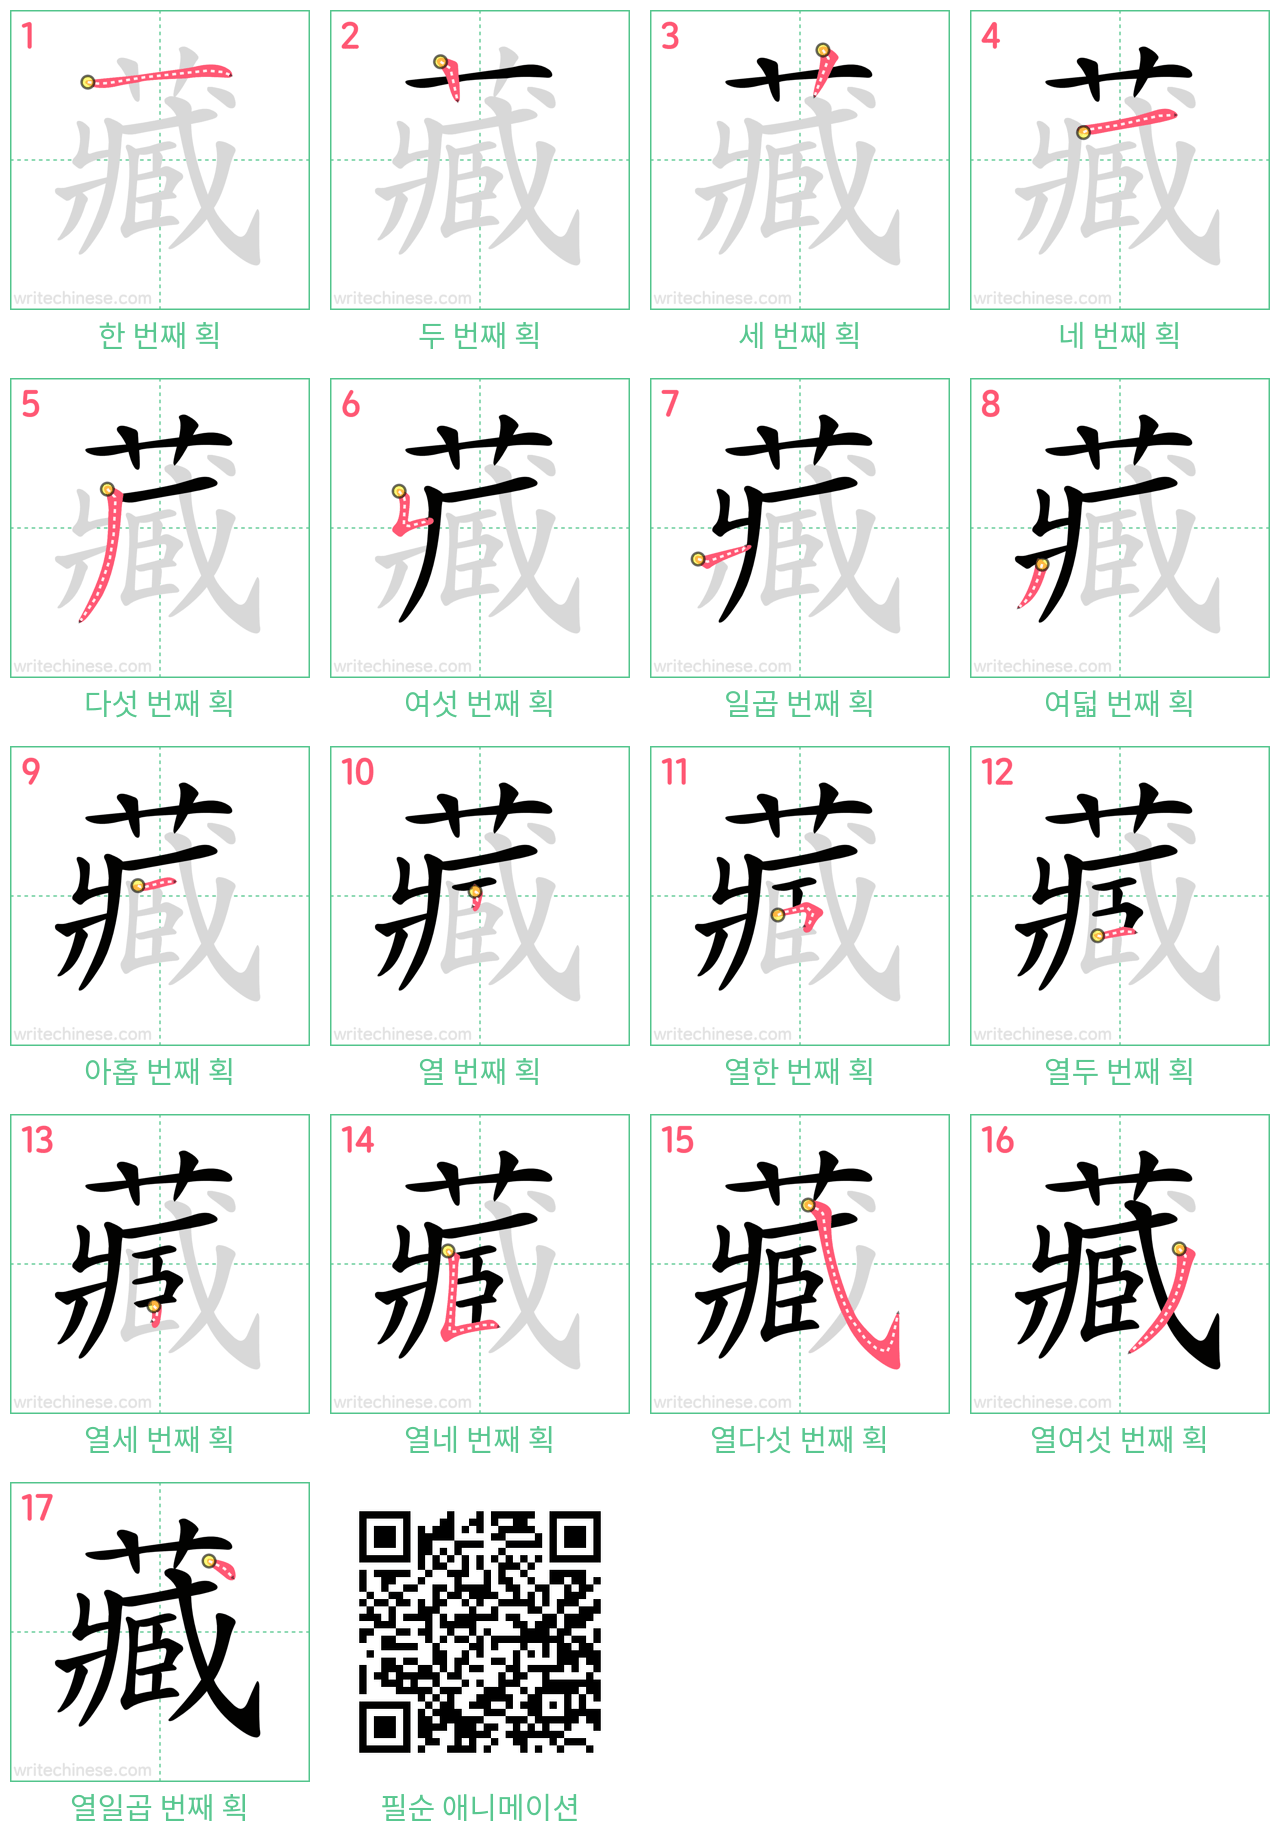 藏 step-by-step stroke order diagrams